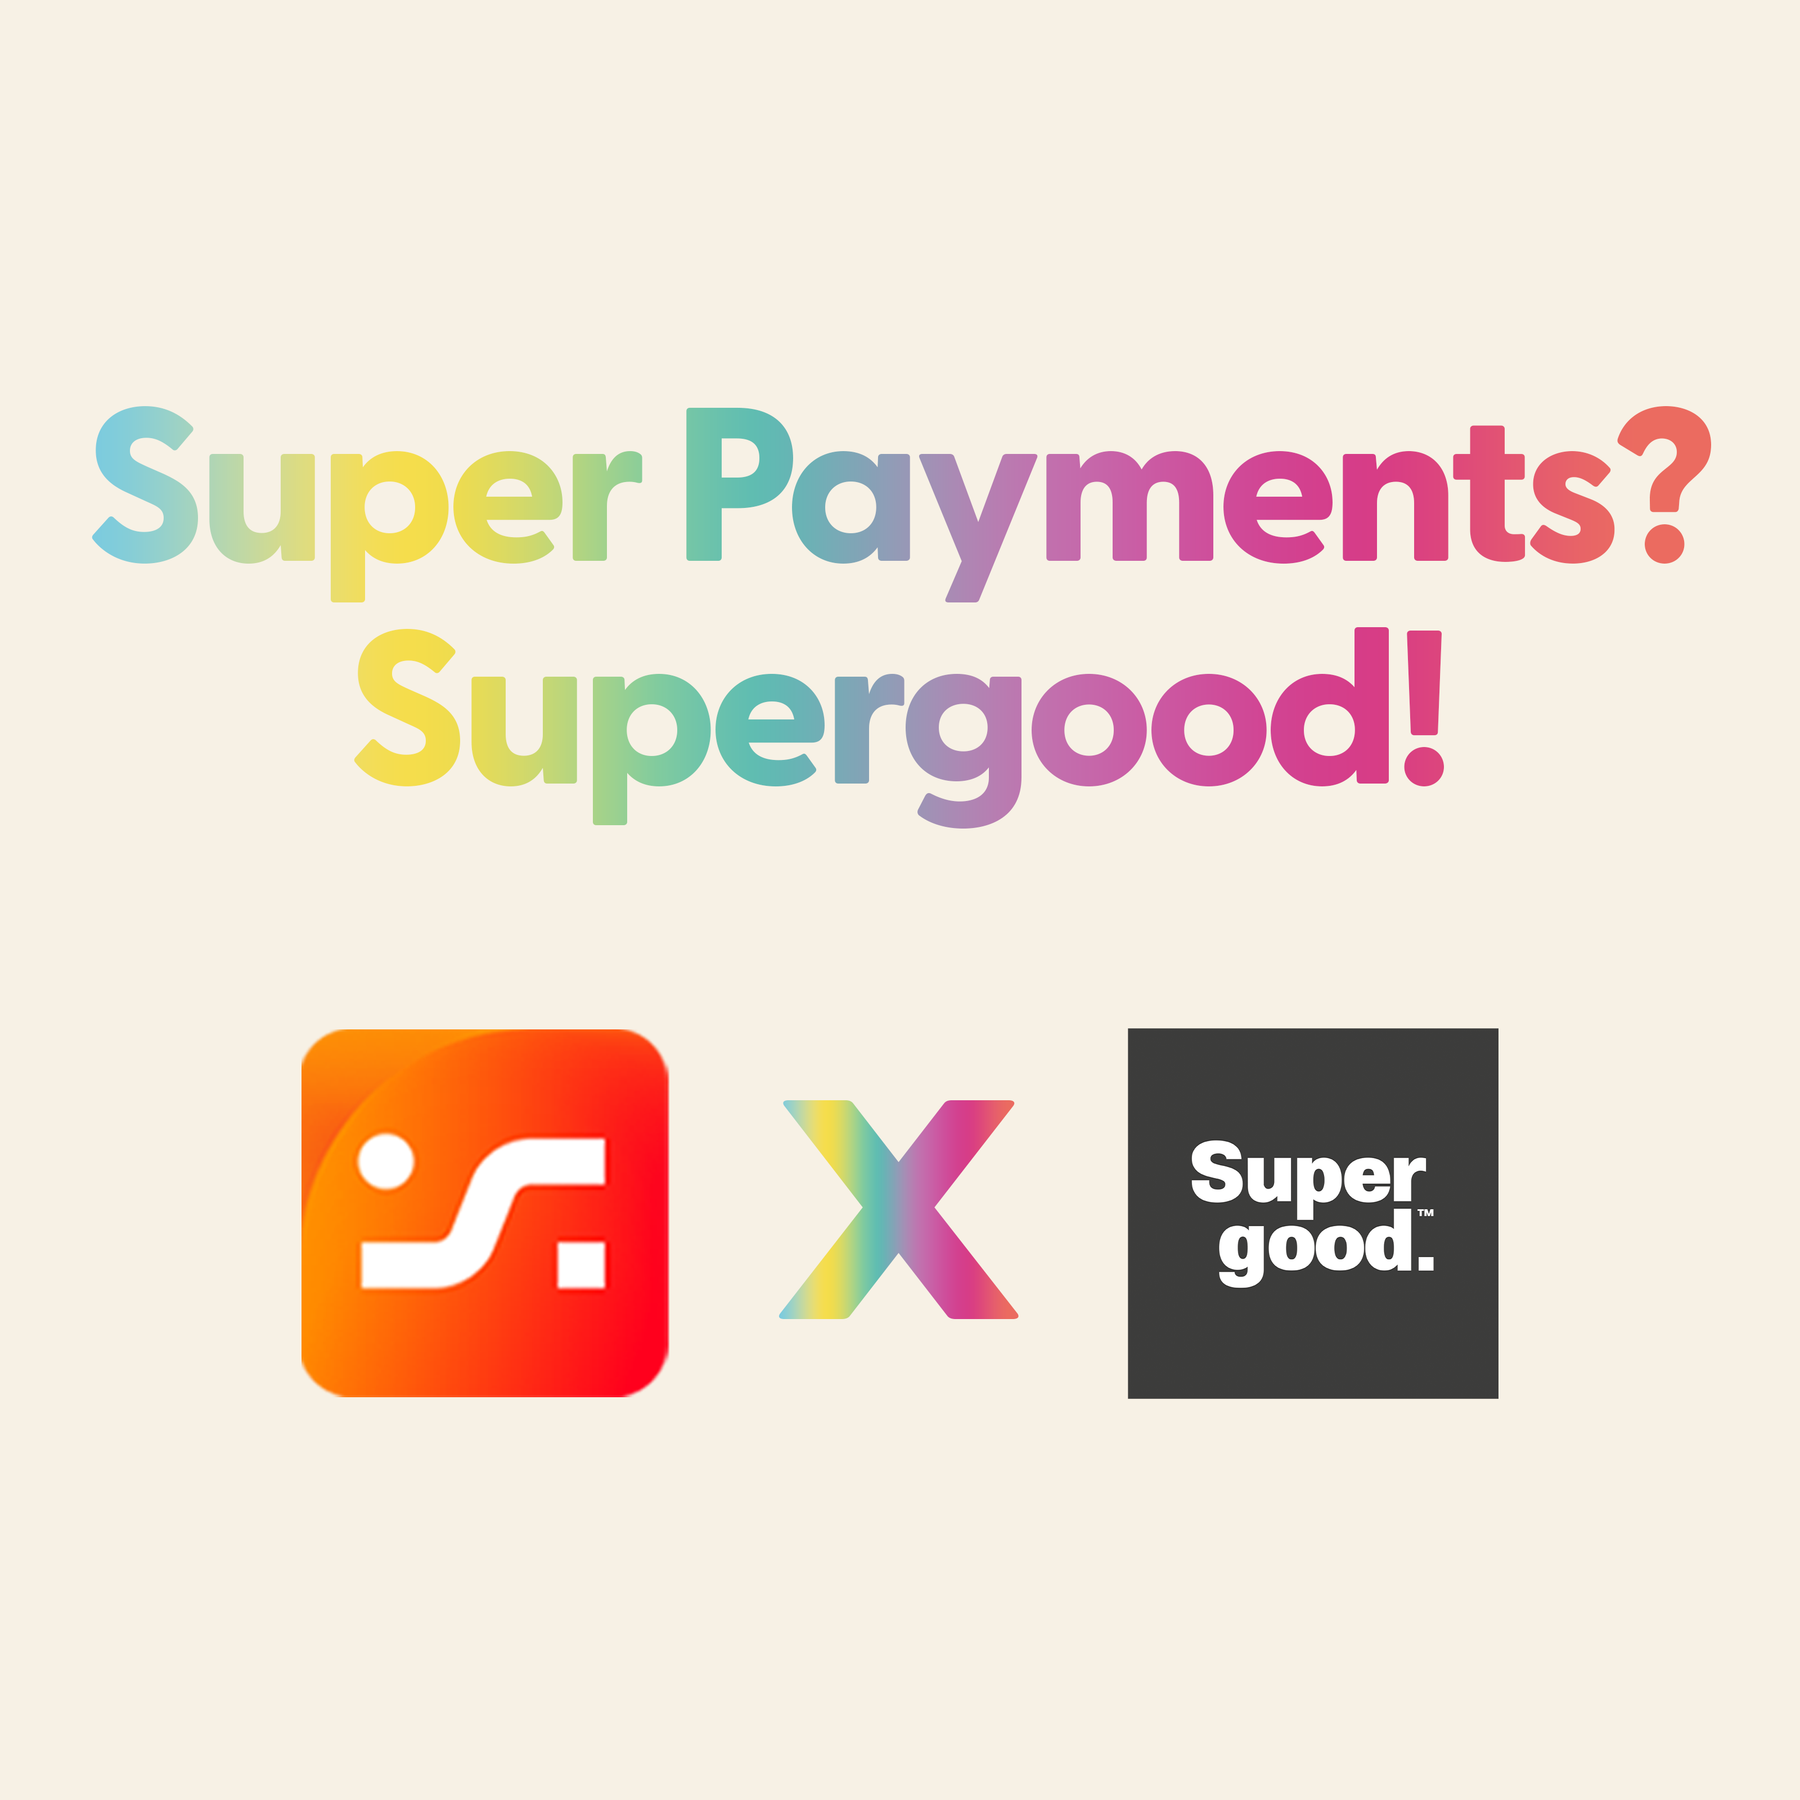 Super Payments? Supergood!